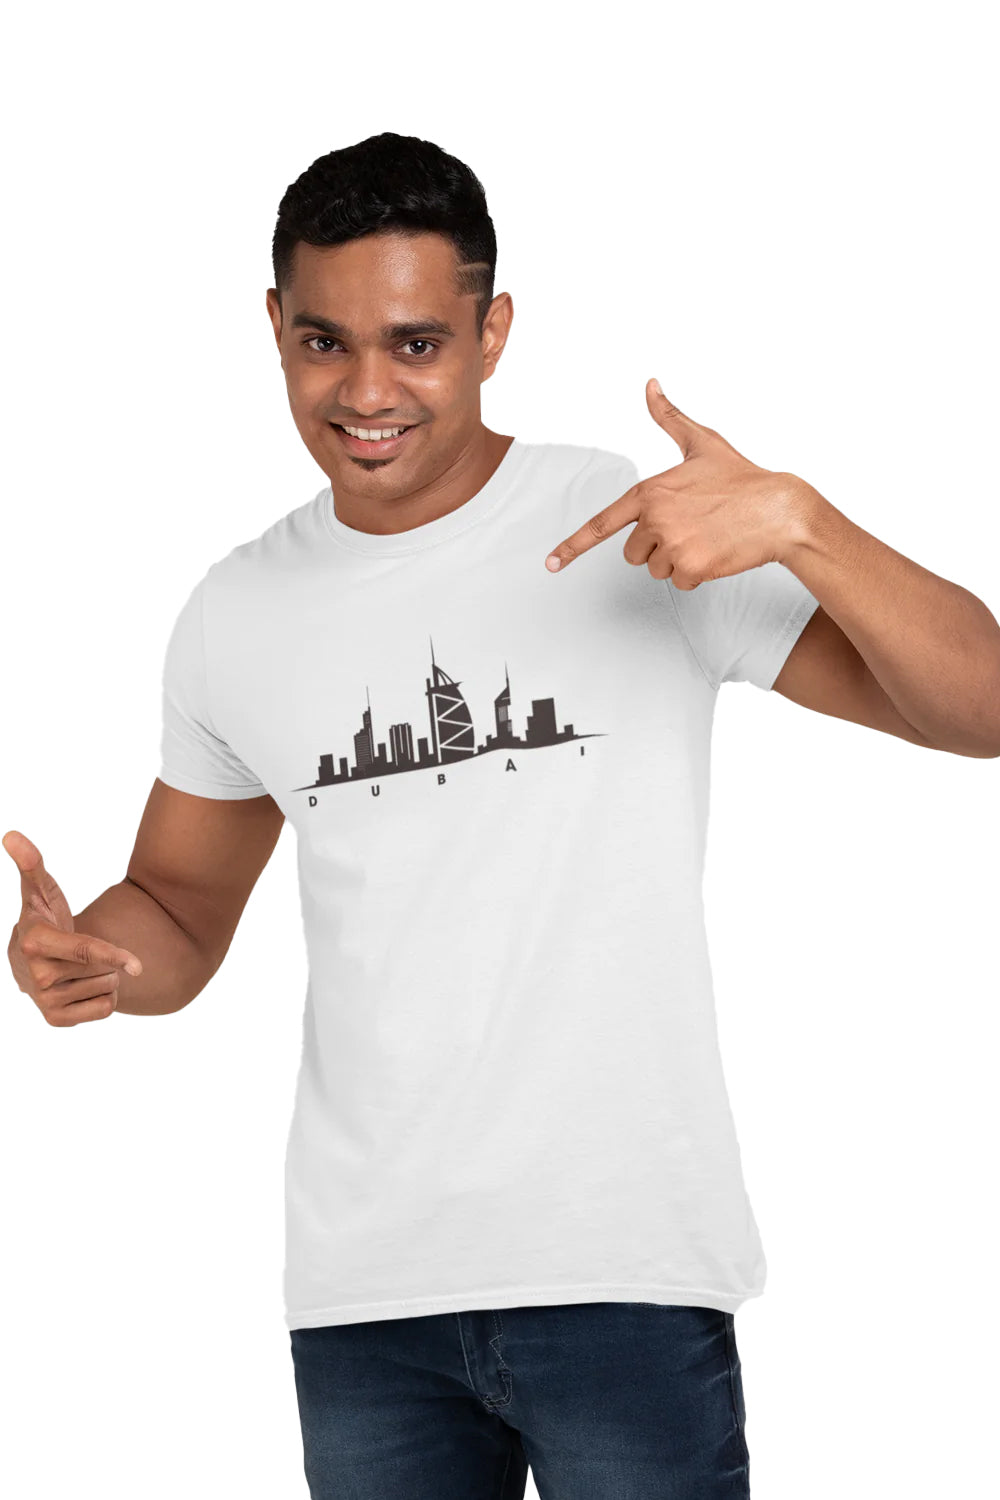 Dubai Skyline Graphic Printed White Tshirt